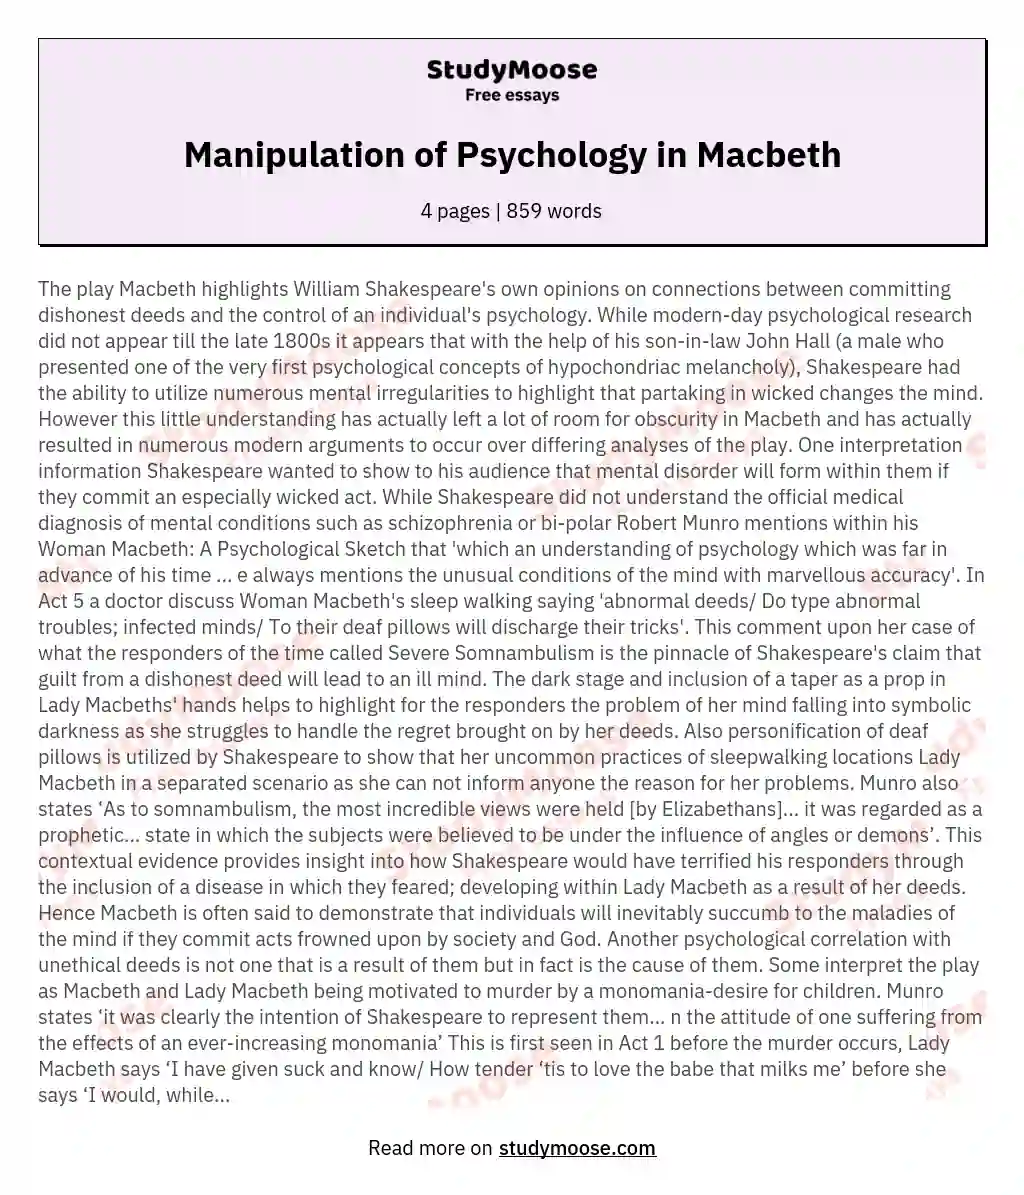 Manipulation of Psychology in Macbeth essay